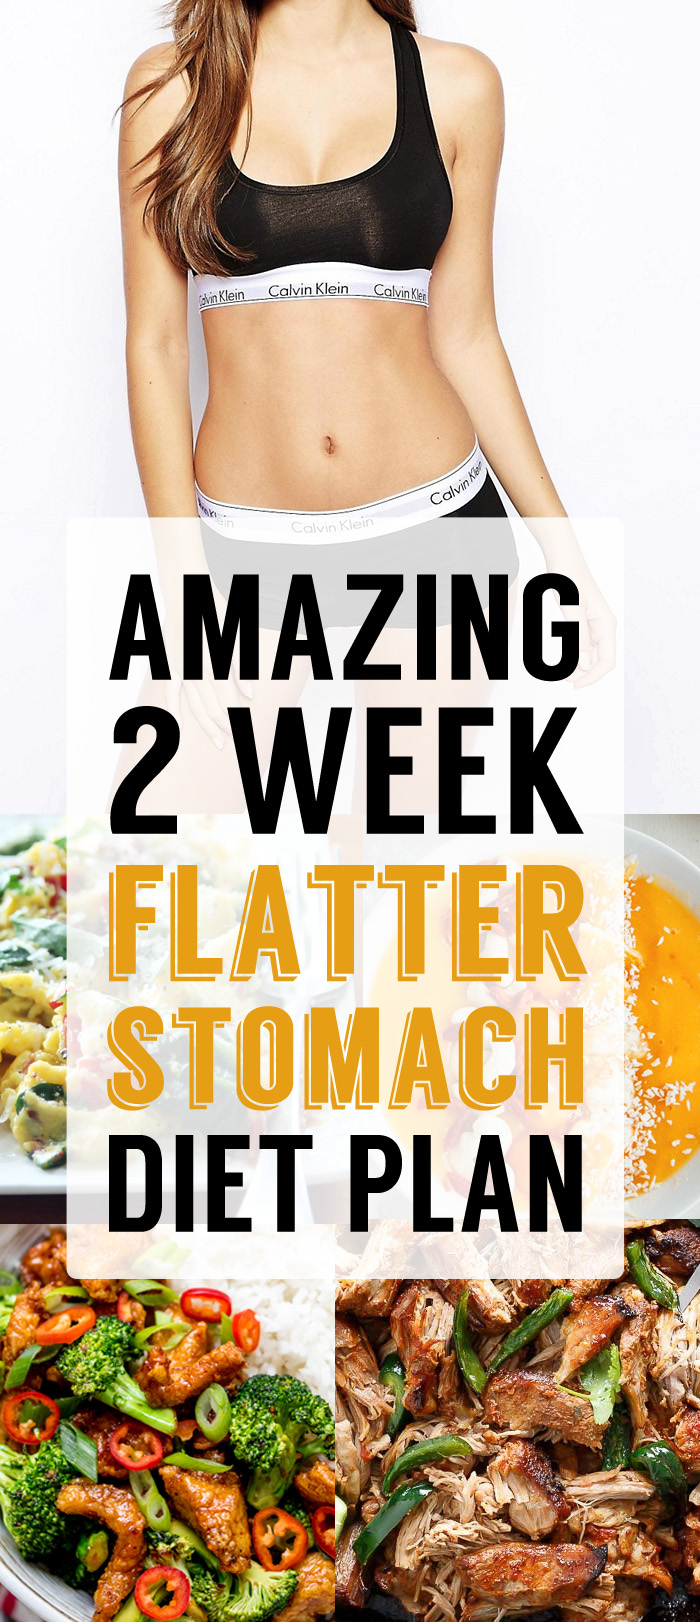 Amazing 2 Week Flatter Stomach Diet Plan Breakfast Lunch Dinner